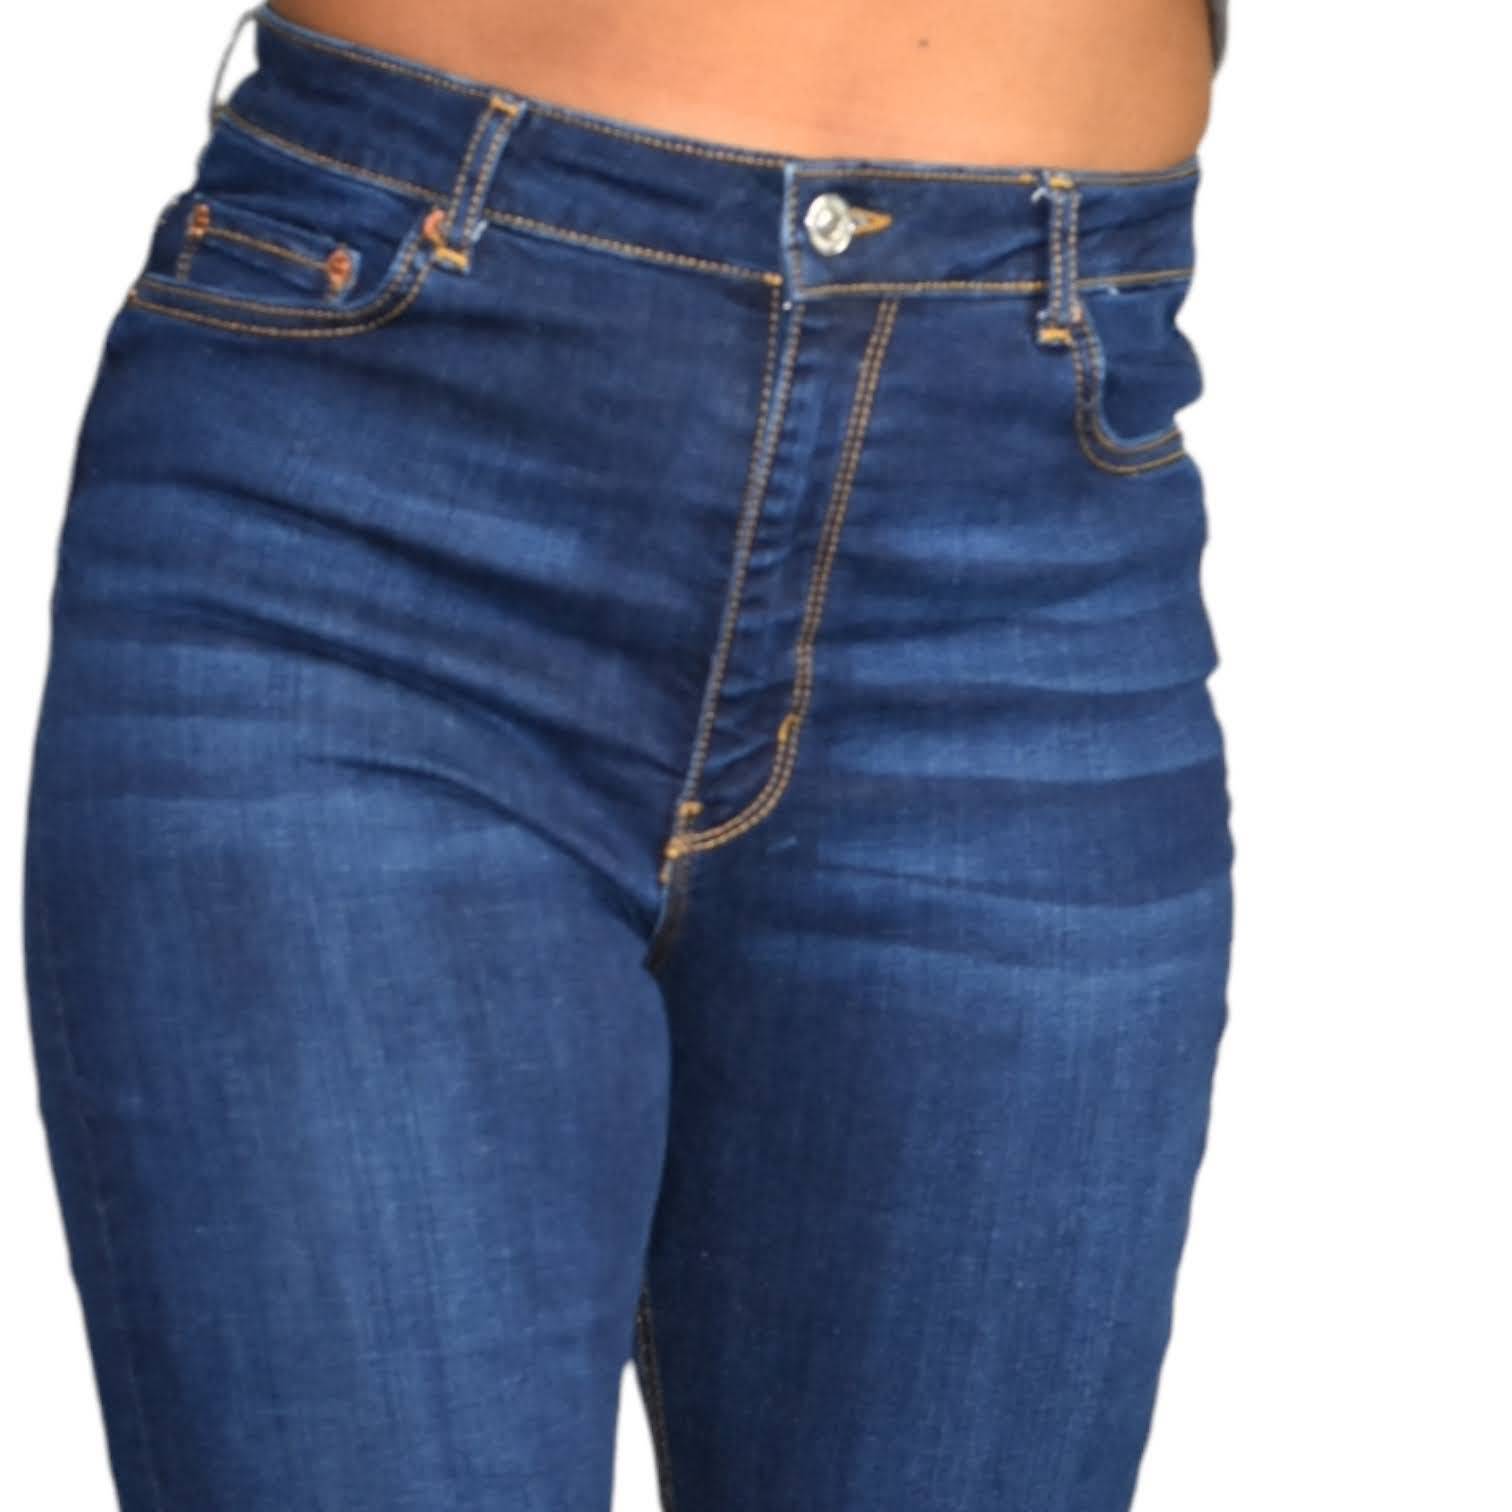 Zara Dark Wash Flare Jeans